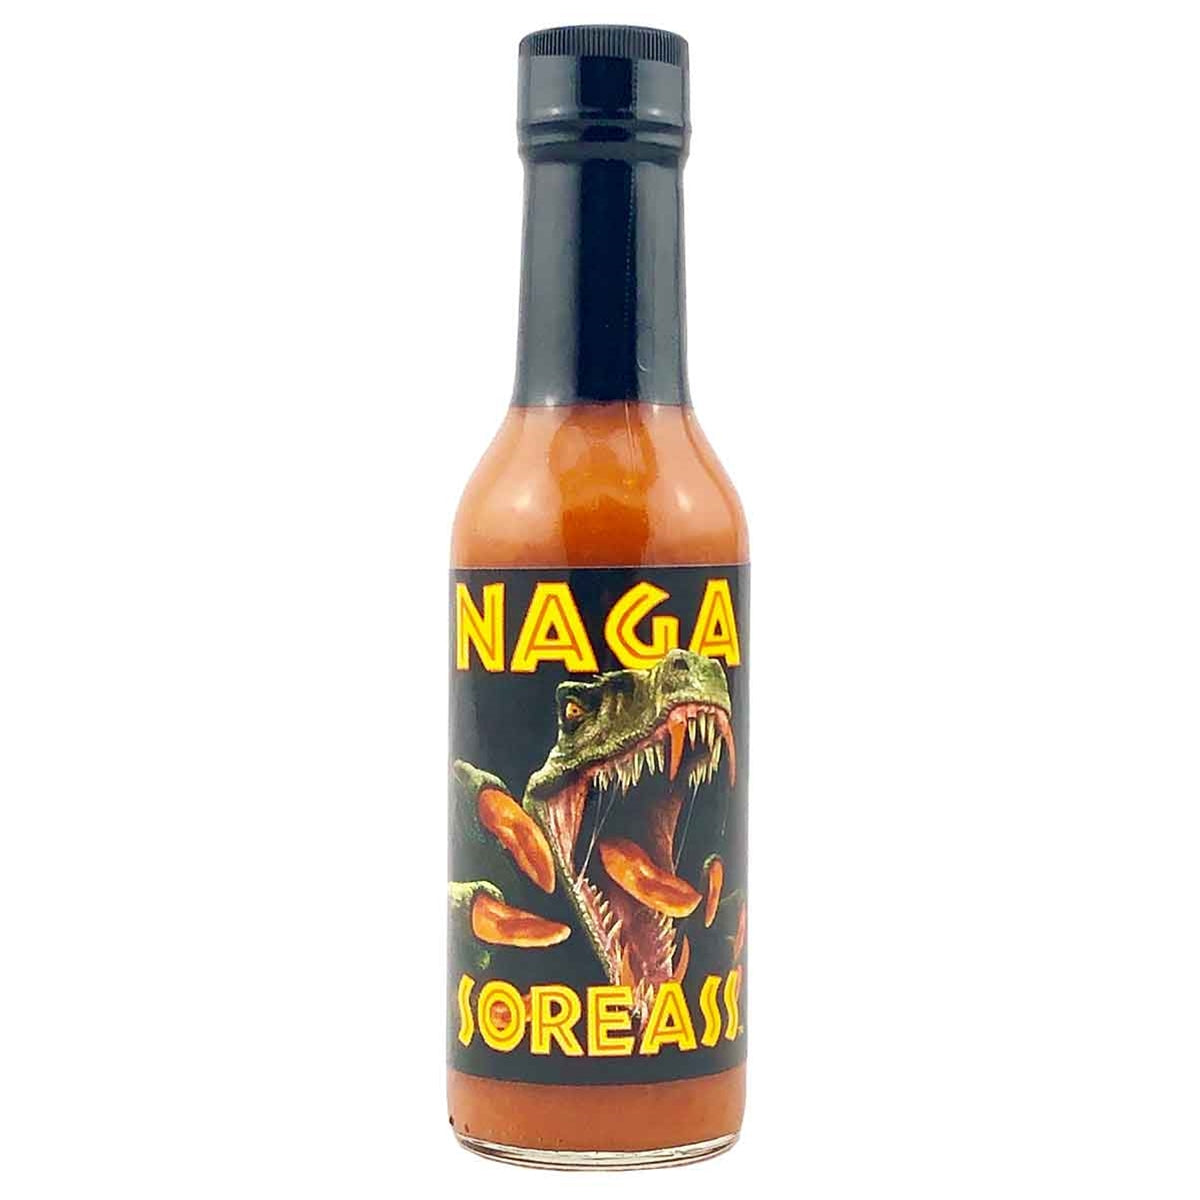 Nagasoreass Hot Sauce